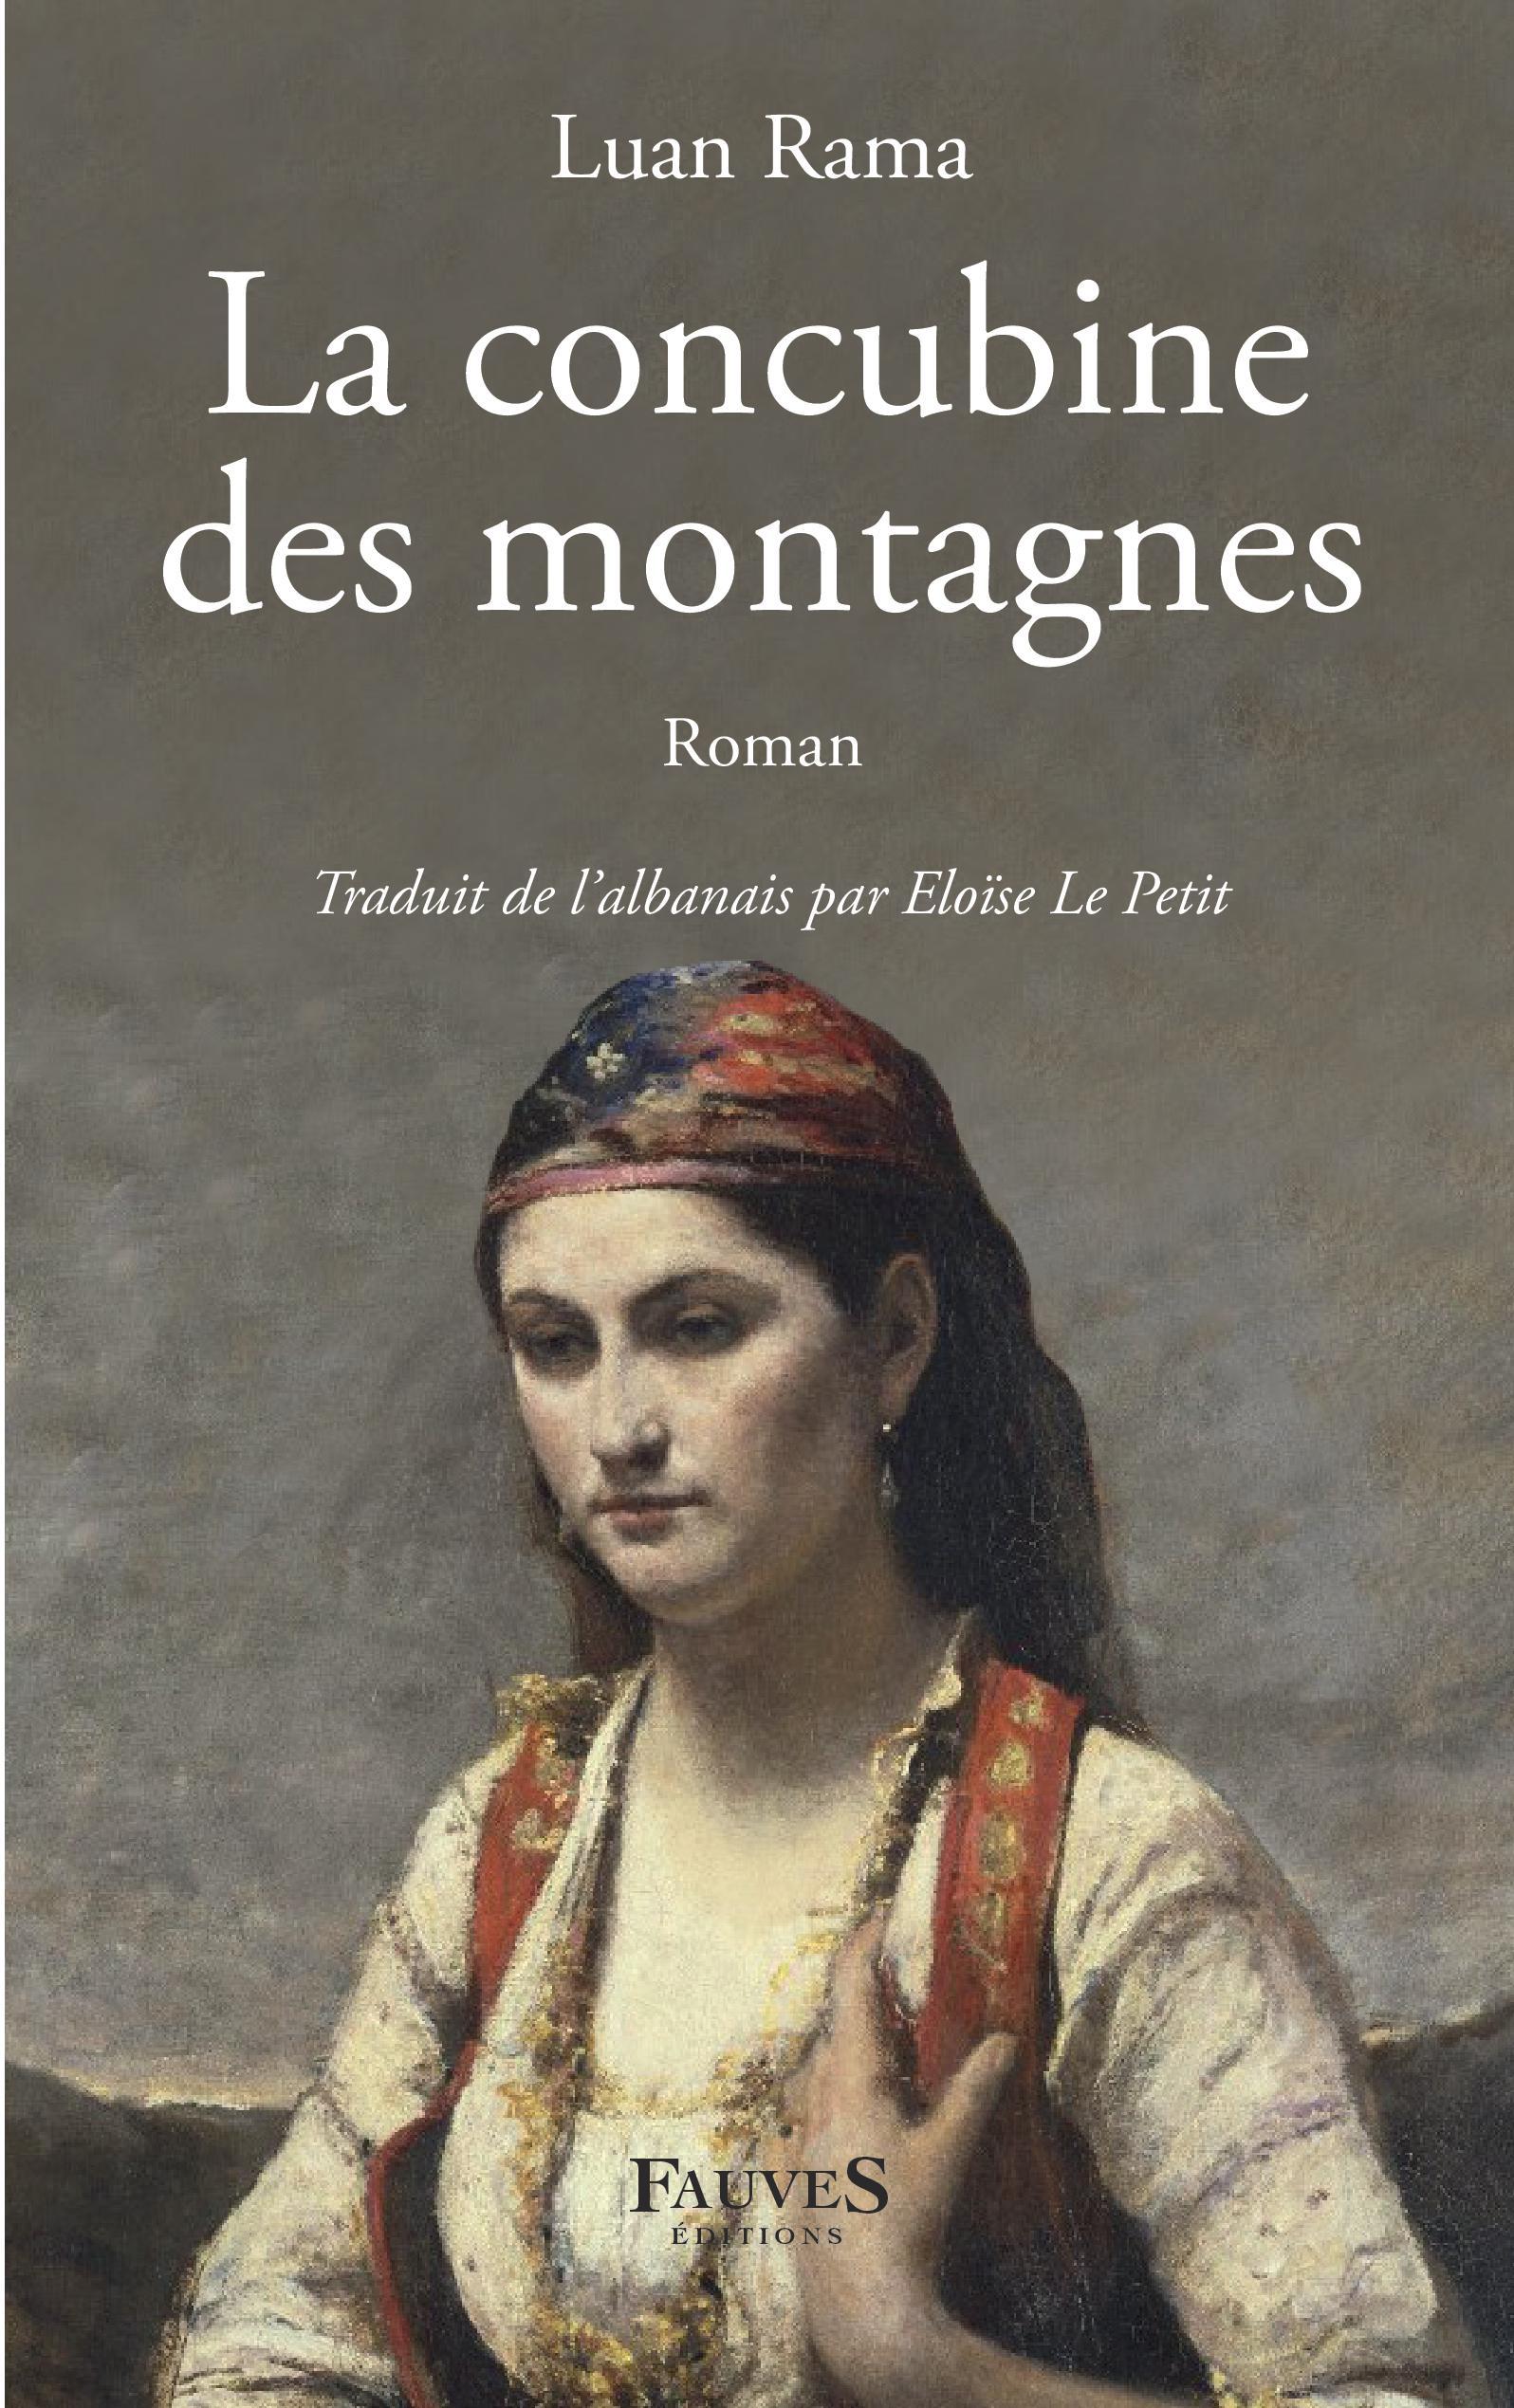 La Concubine des montagnes (9791030204025-front-cover)